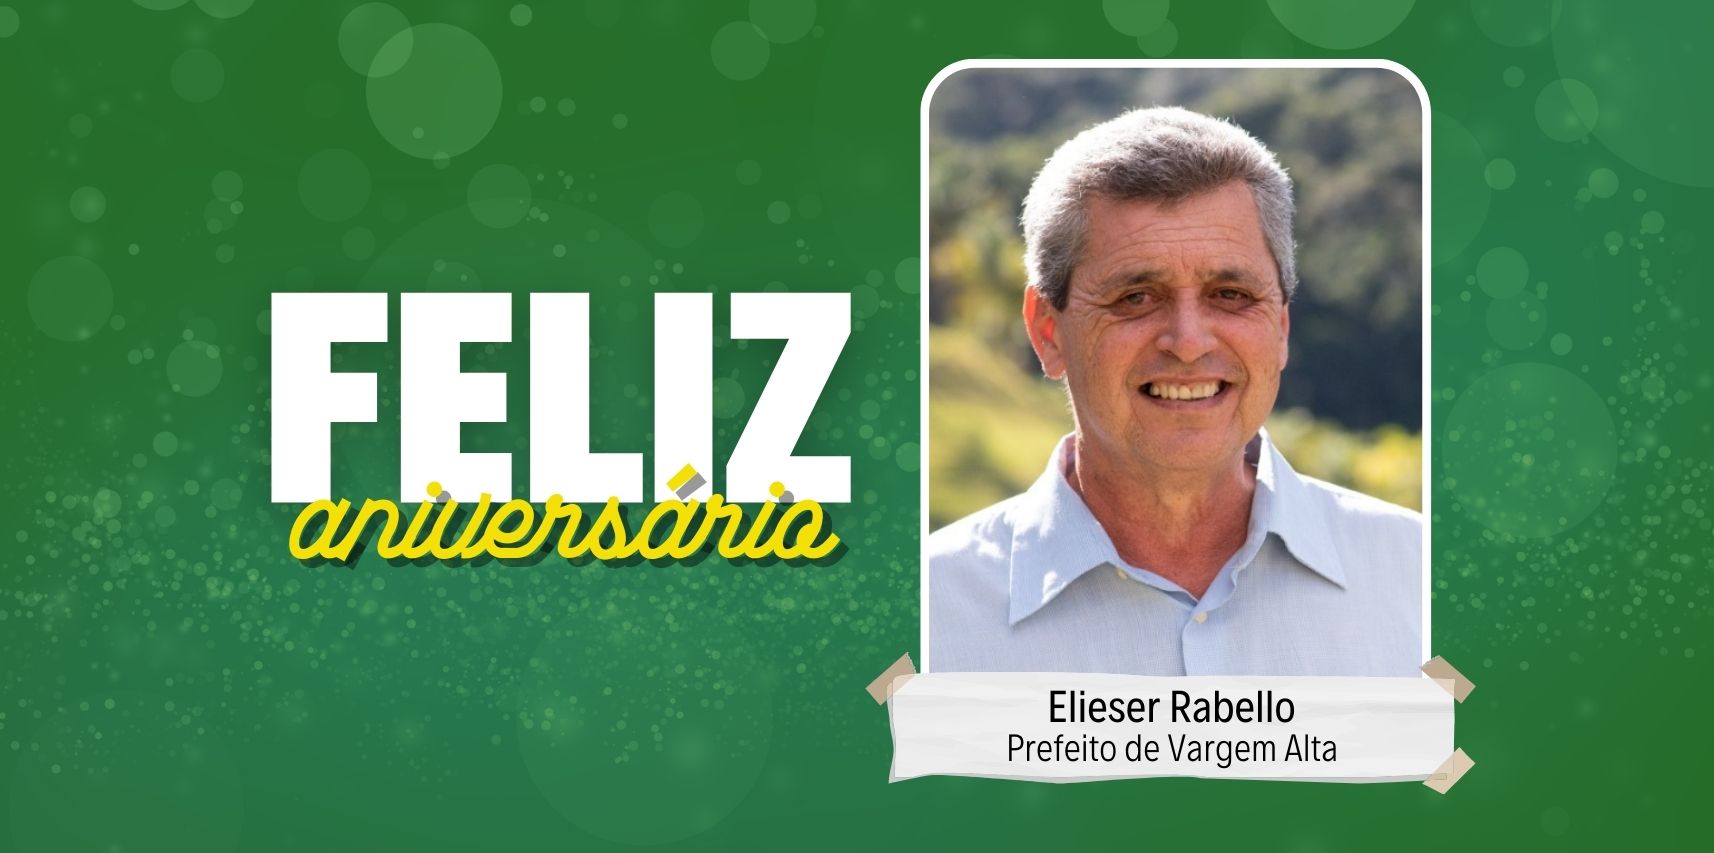 Mensagem de aniversário ao prefeito de Vargem Alta Elieser Rabello